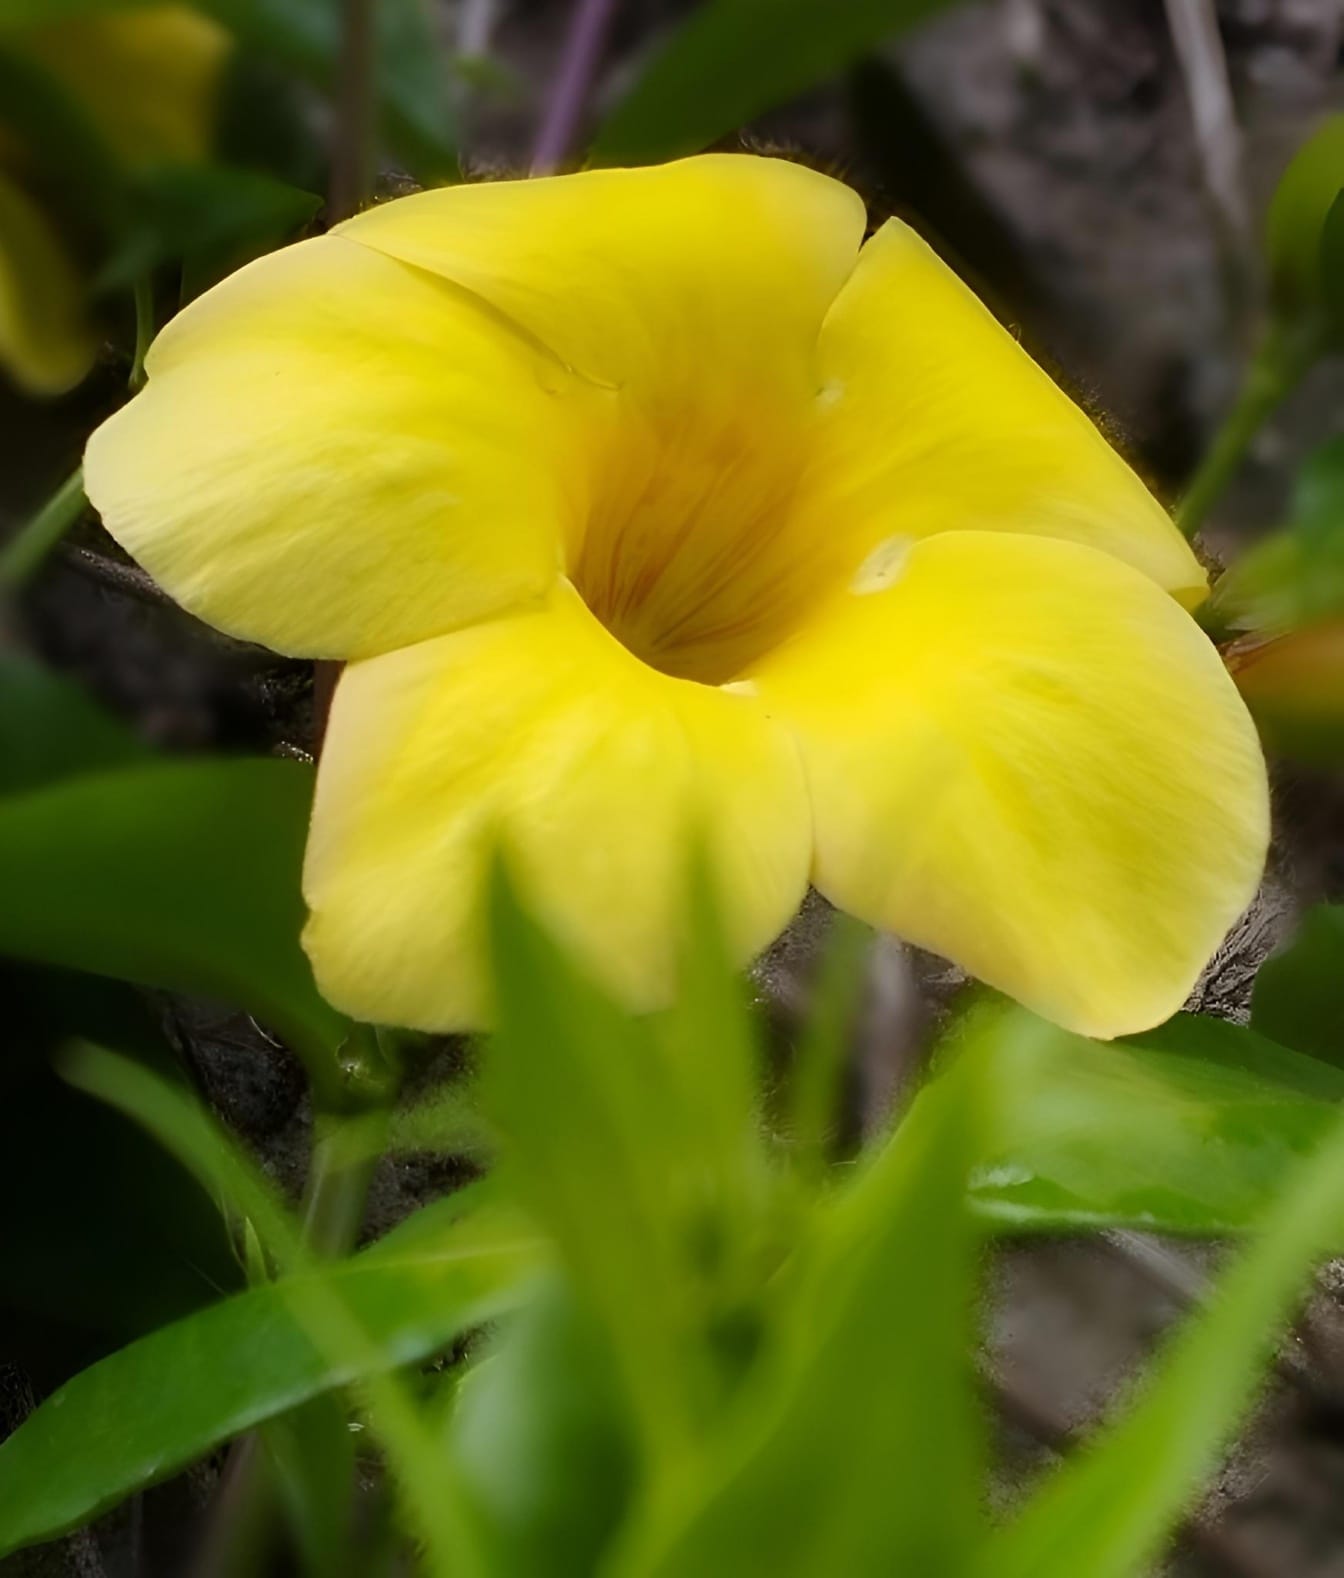 Żółty kwiat z zielonymi liśćmi znany jako krzew Allamanda (Allamanda schottii)